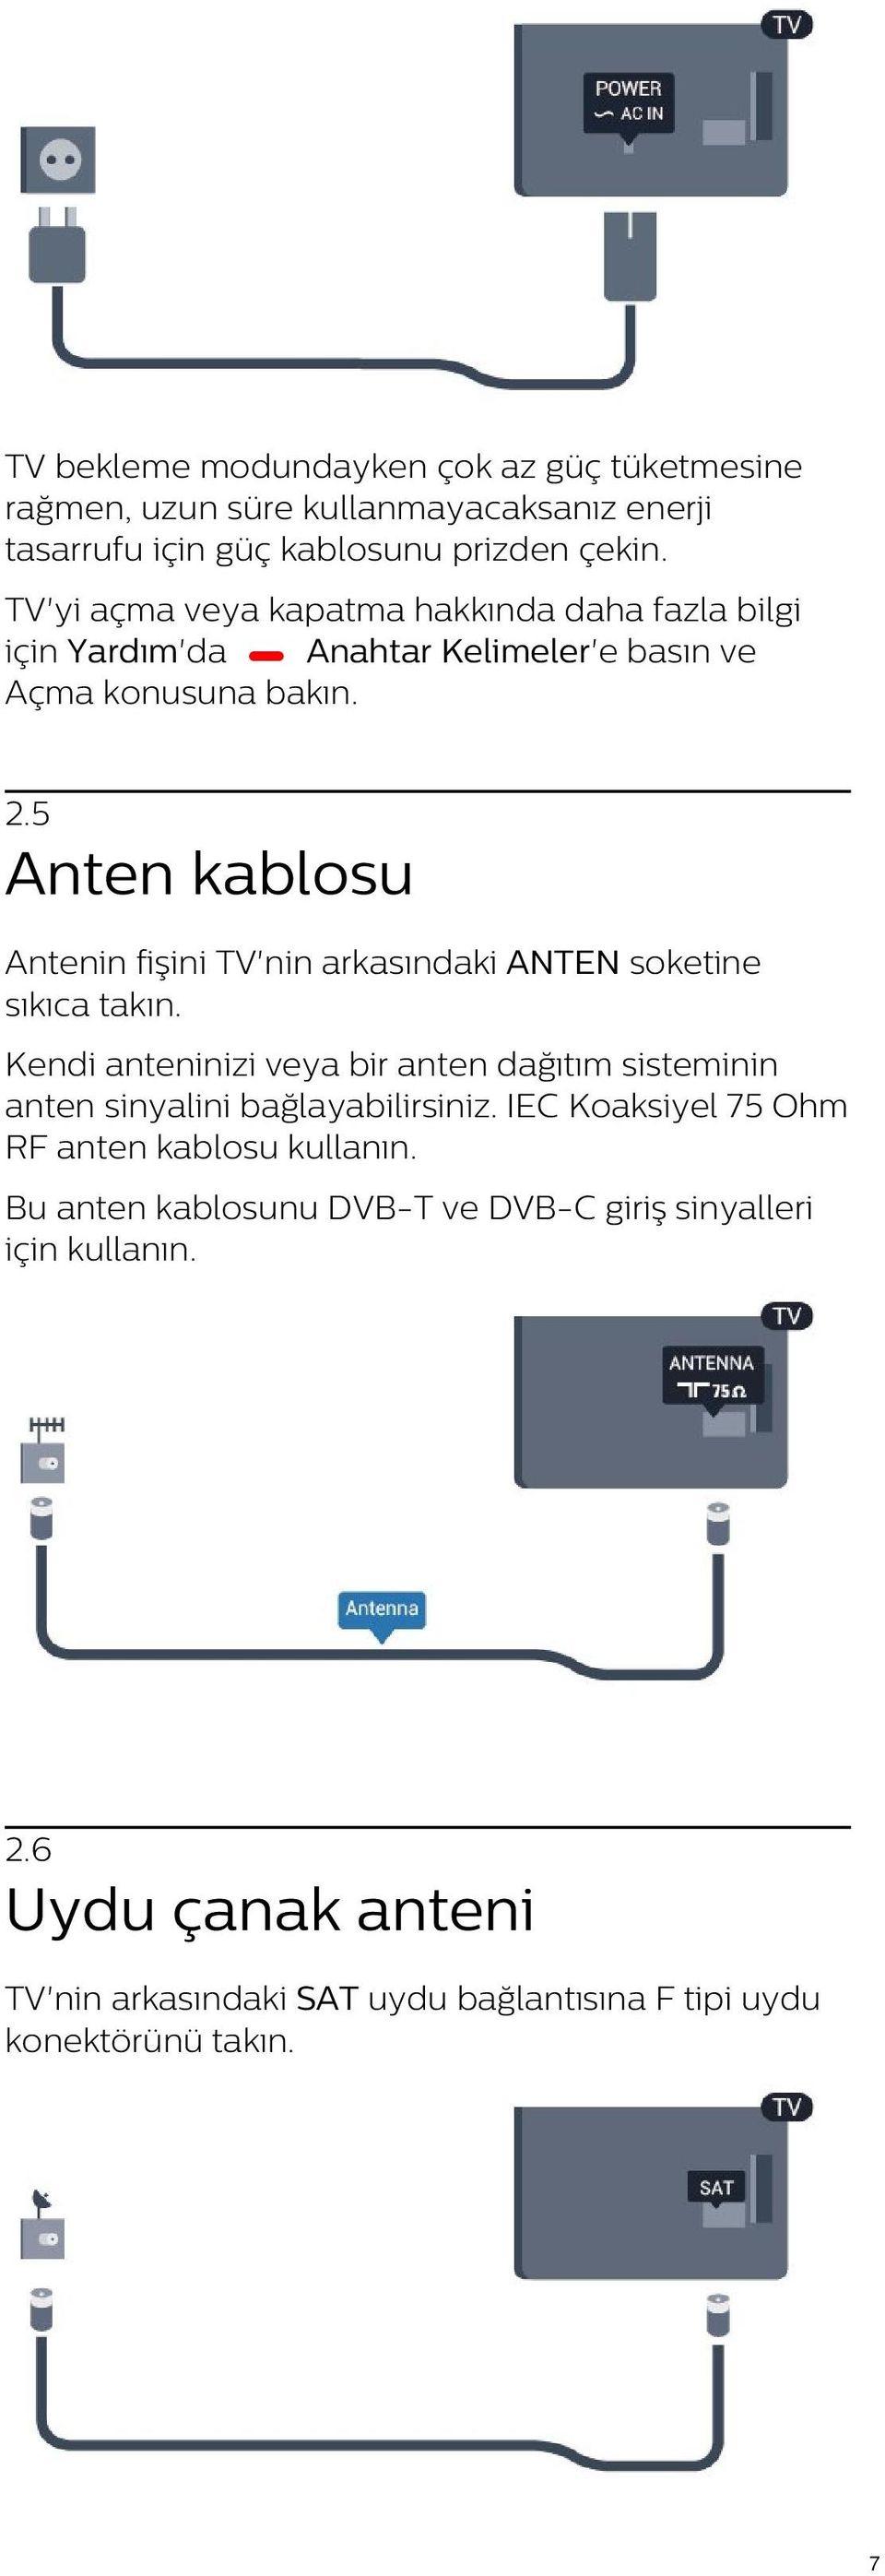 5 Anten kablosu Antenin fişini TV'nin arkasındaki ANTEN soketine sıkıca takın.